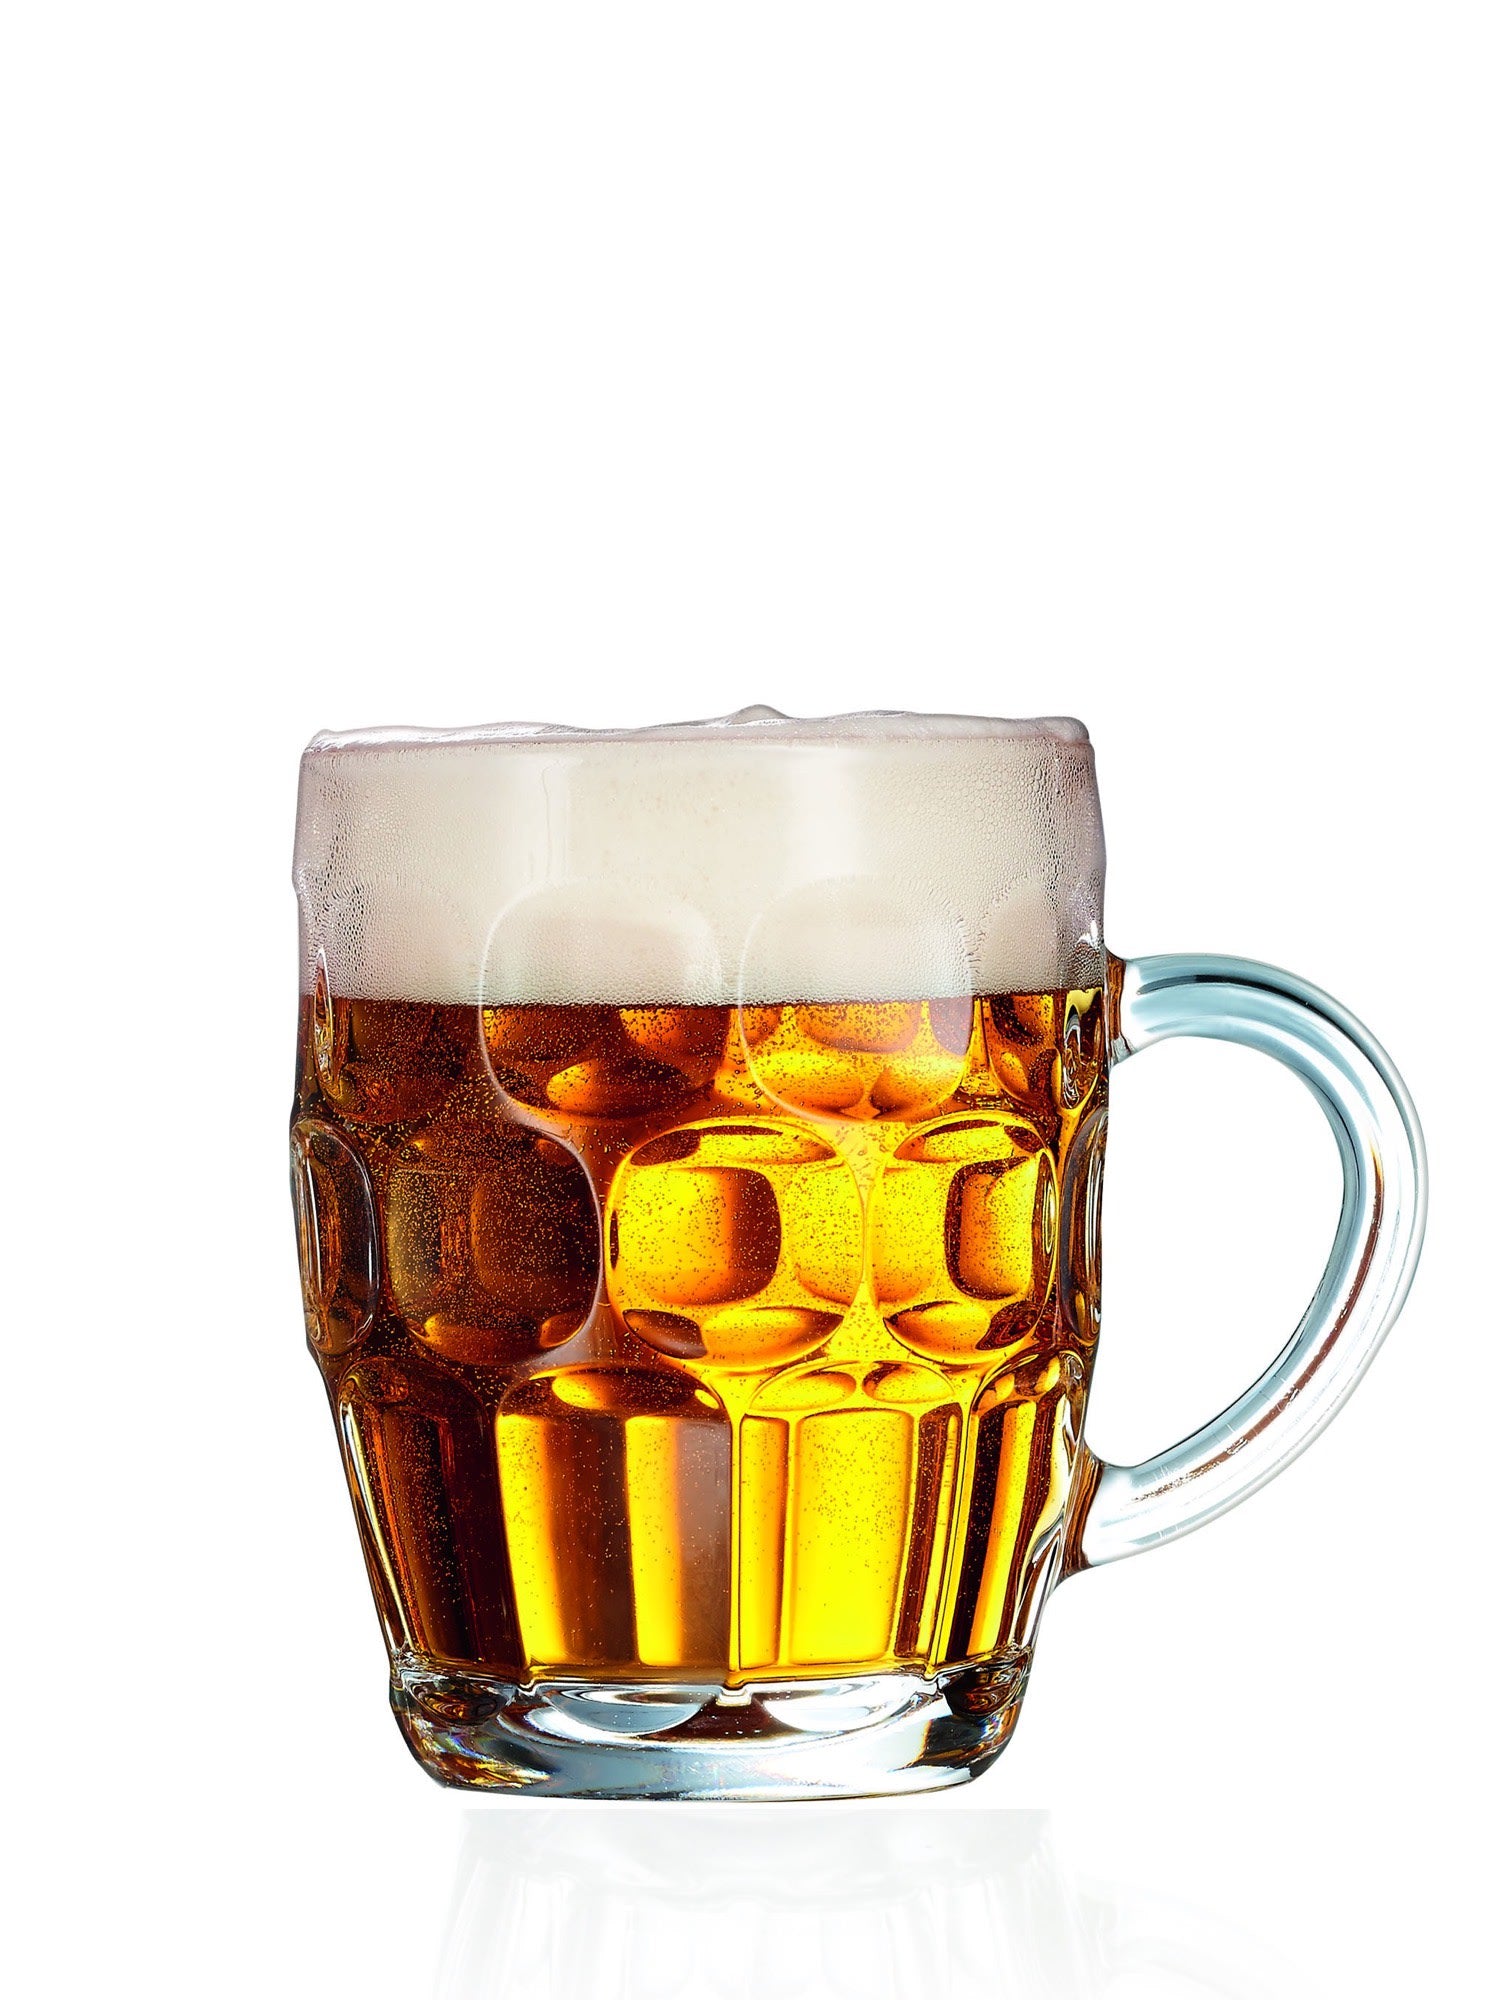 Lad dine gæster nyde deres øl i stil med dette klassiske Britannia ølkrus